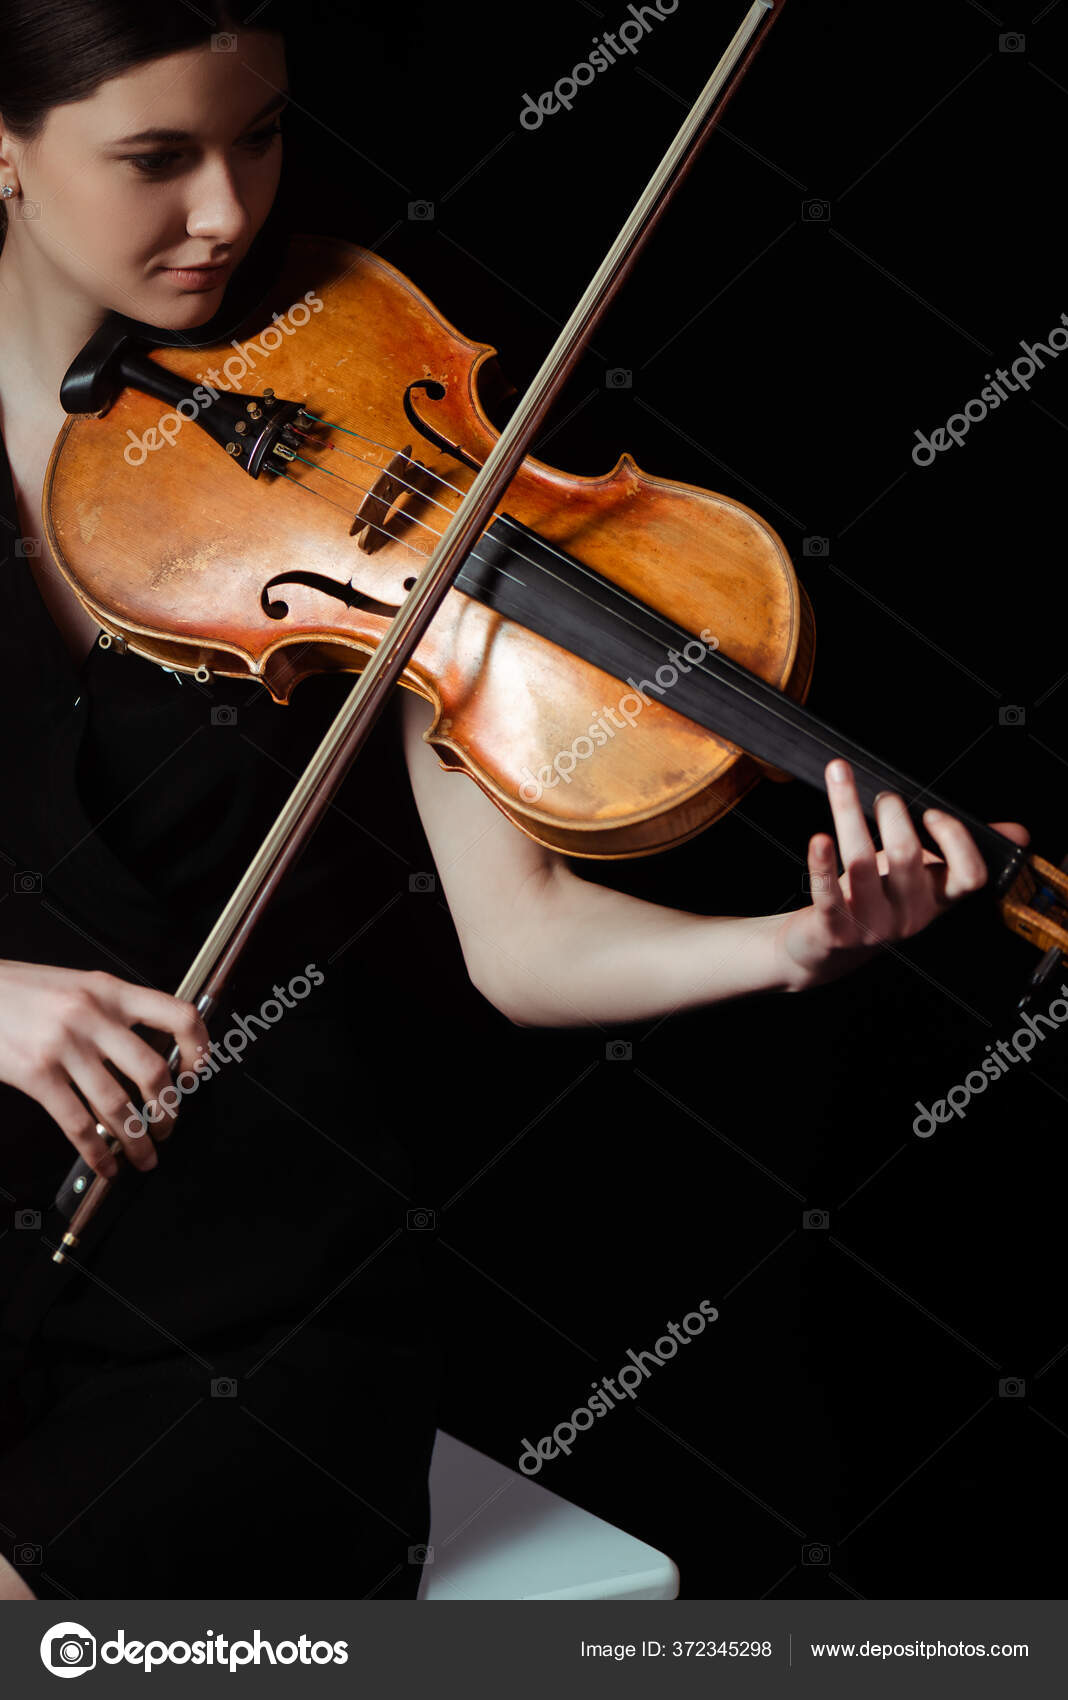 バイオリン写真素材 ロイヤリティフリーバイオリン画像 Depositphotos